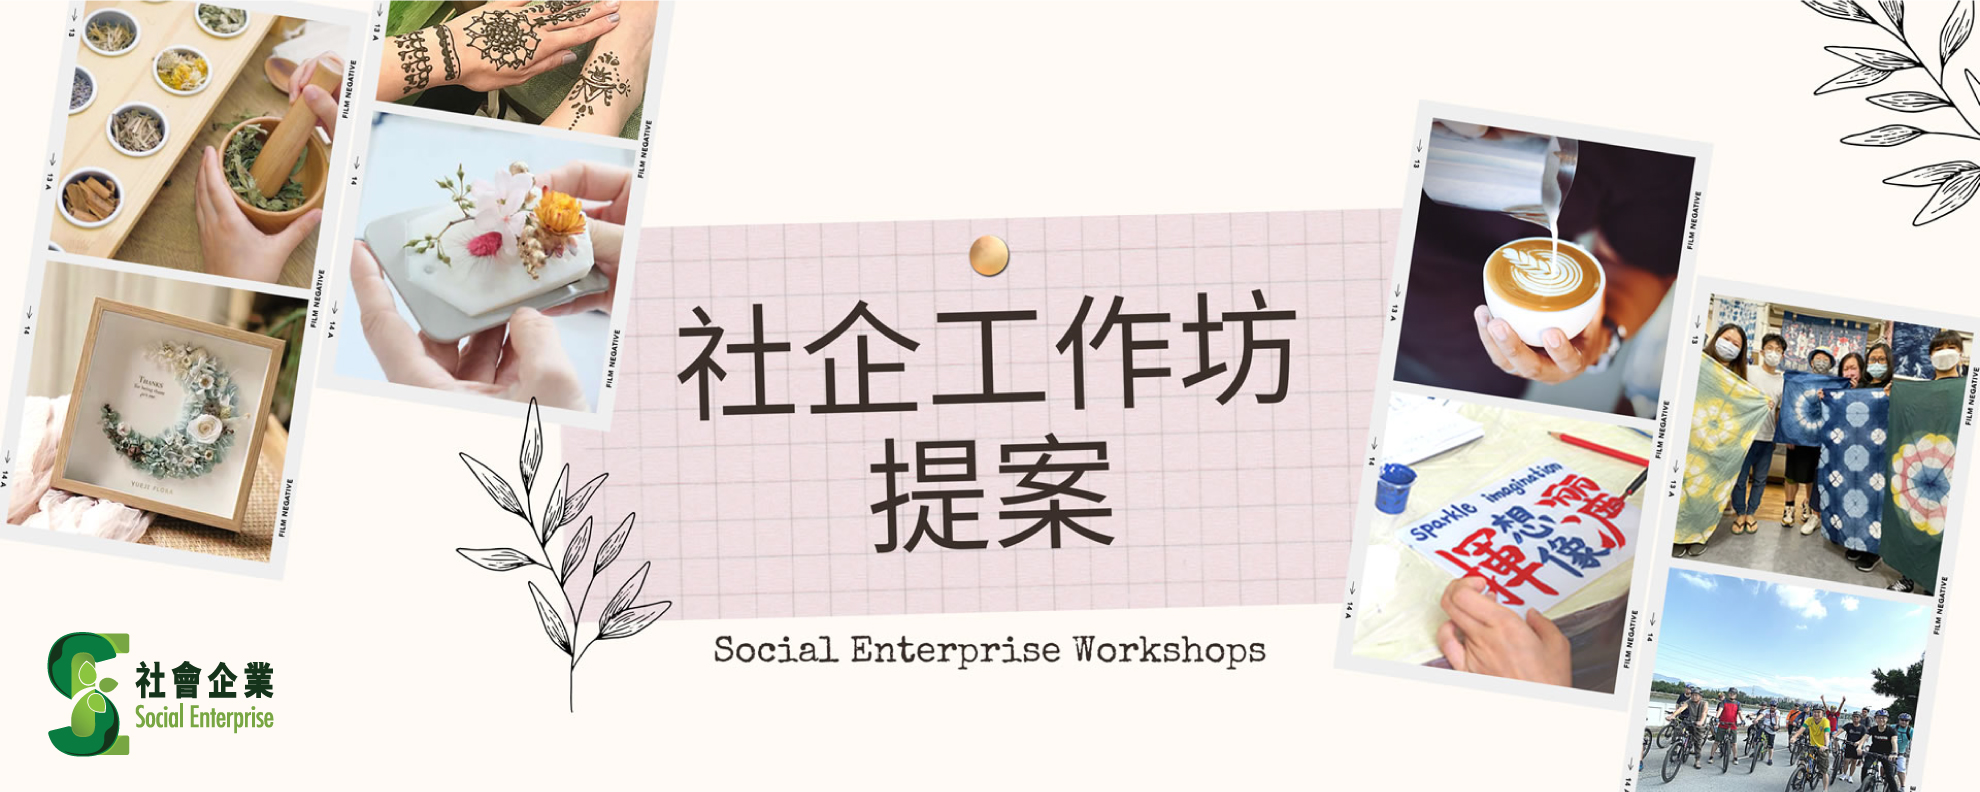 Social Enterprise Workshops